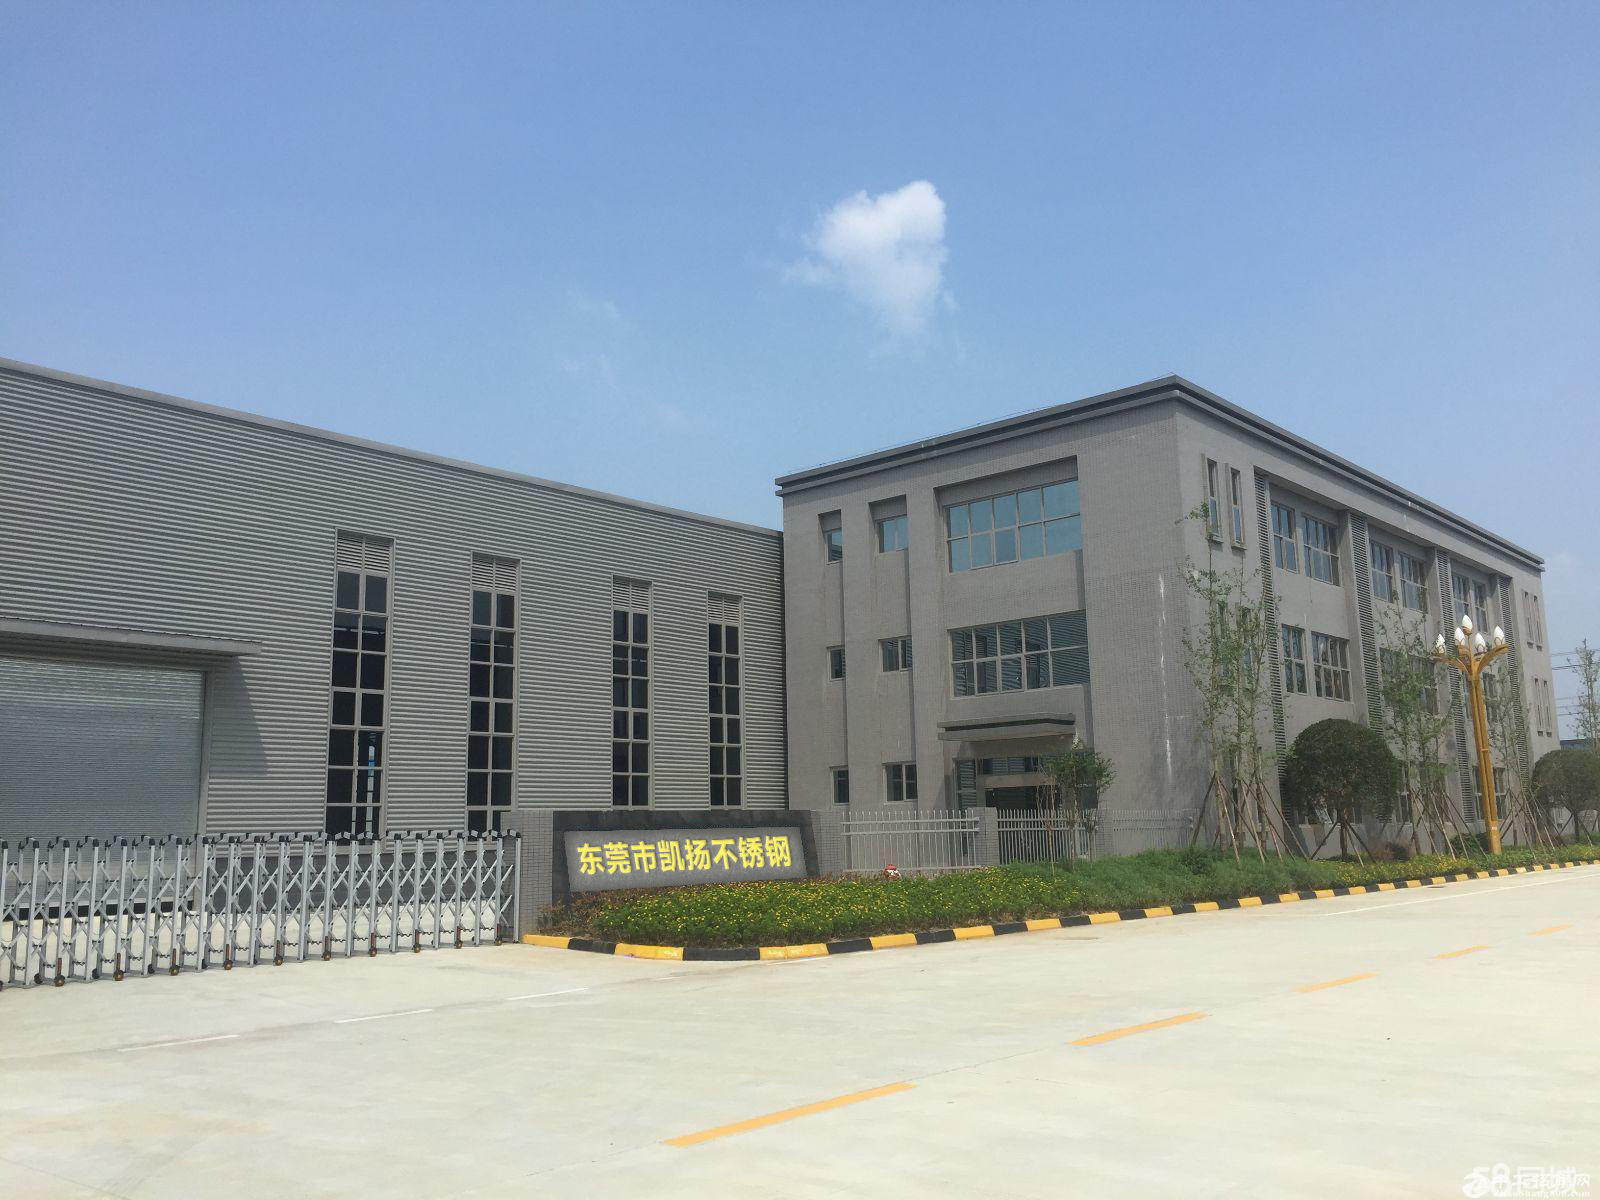   Dongguan Kaiyang Stainless Steel Co., Ltd